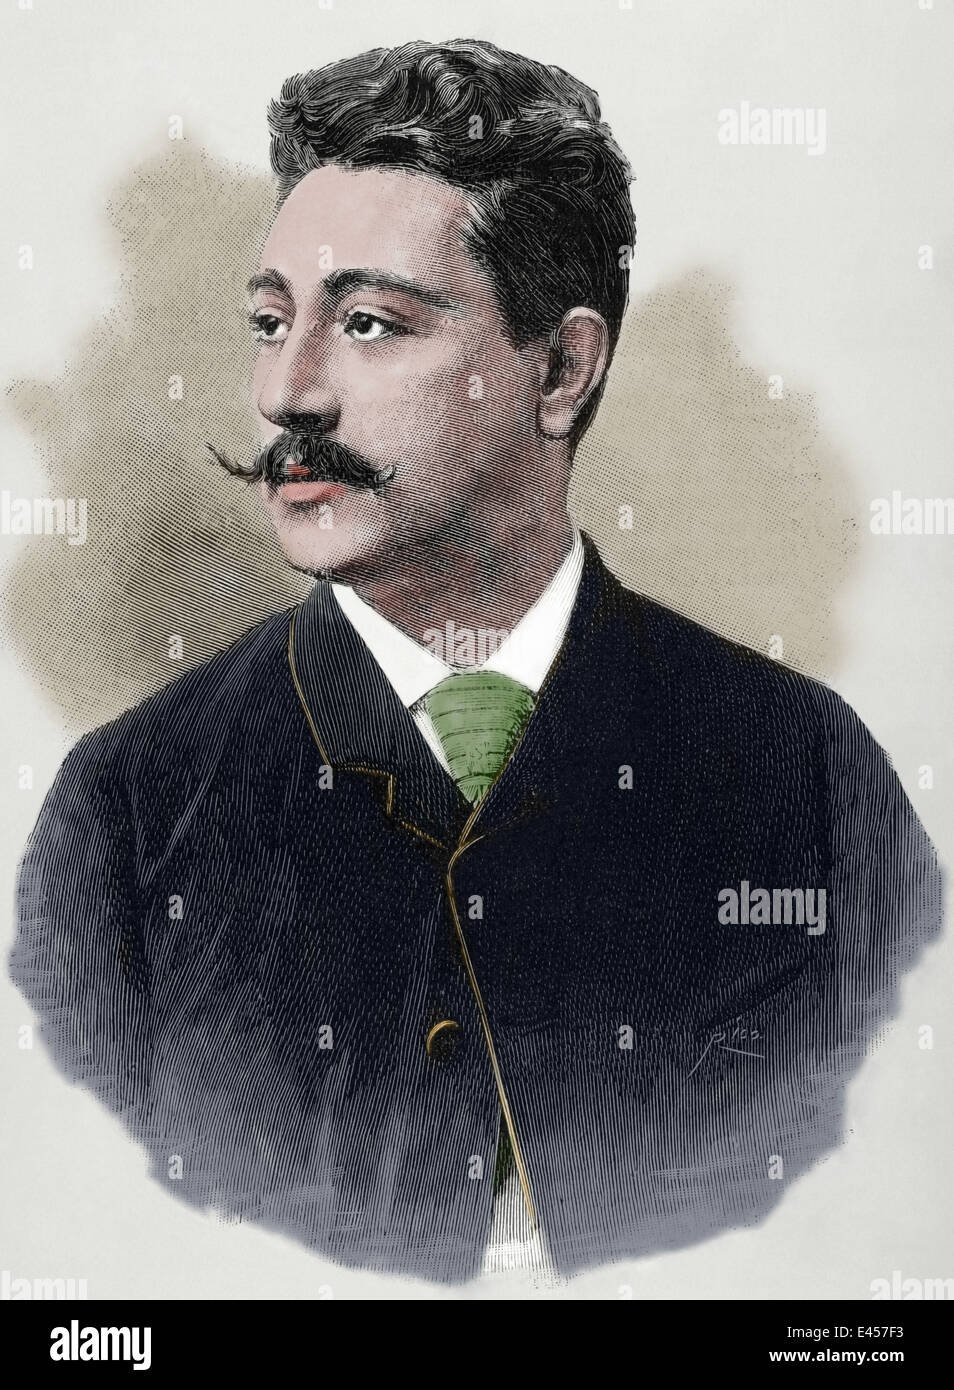 Benedicto Lucignani (b. 1861). Italian tenor. Engraving by Rico. La Ilustracion Espanola y Americana, 1880. Colored. Stock Photo